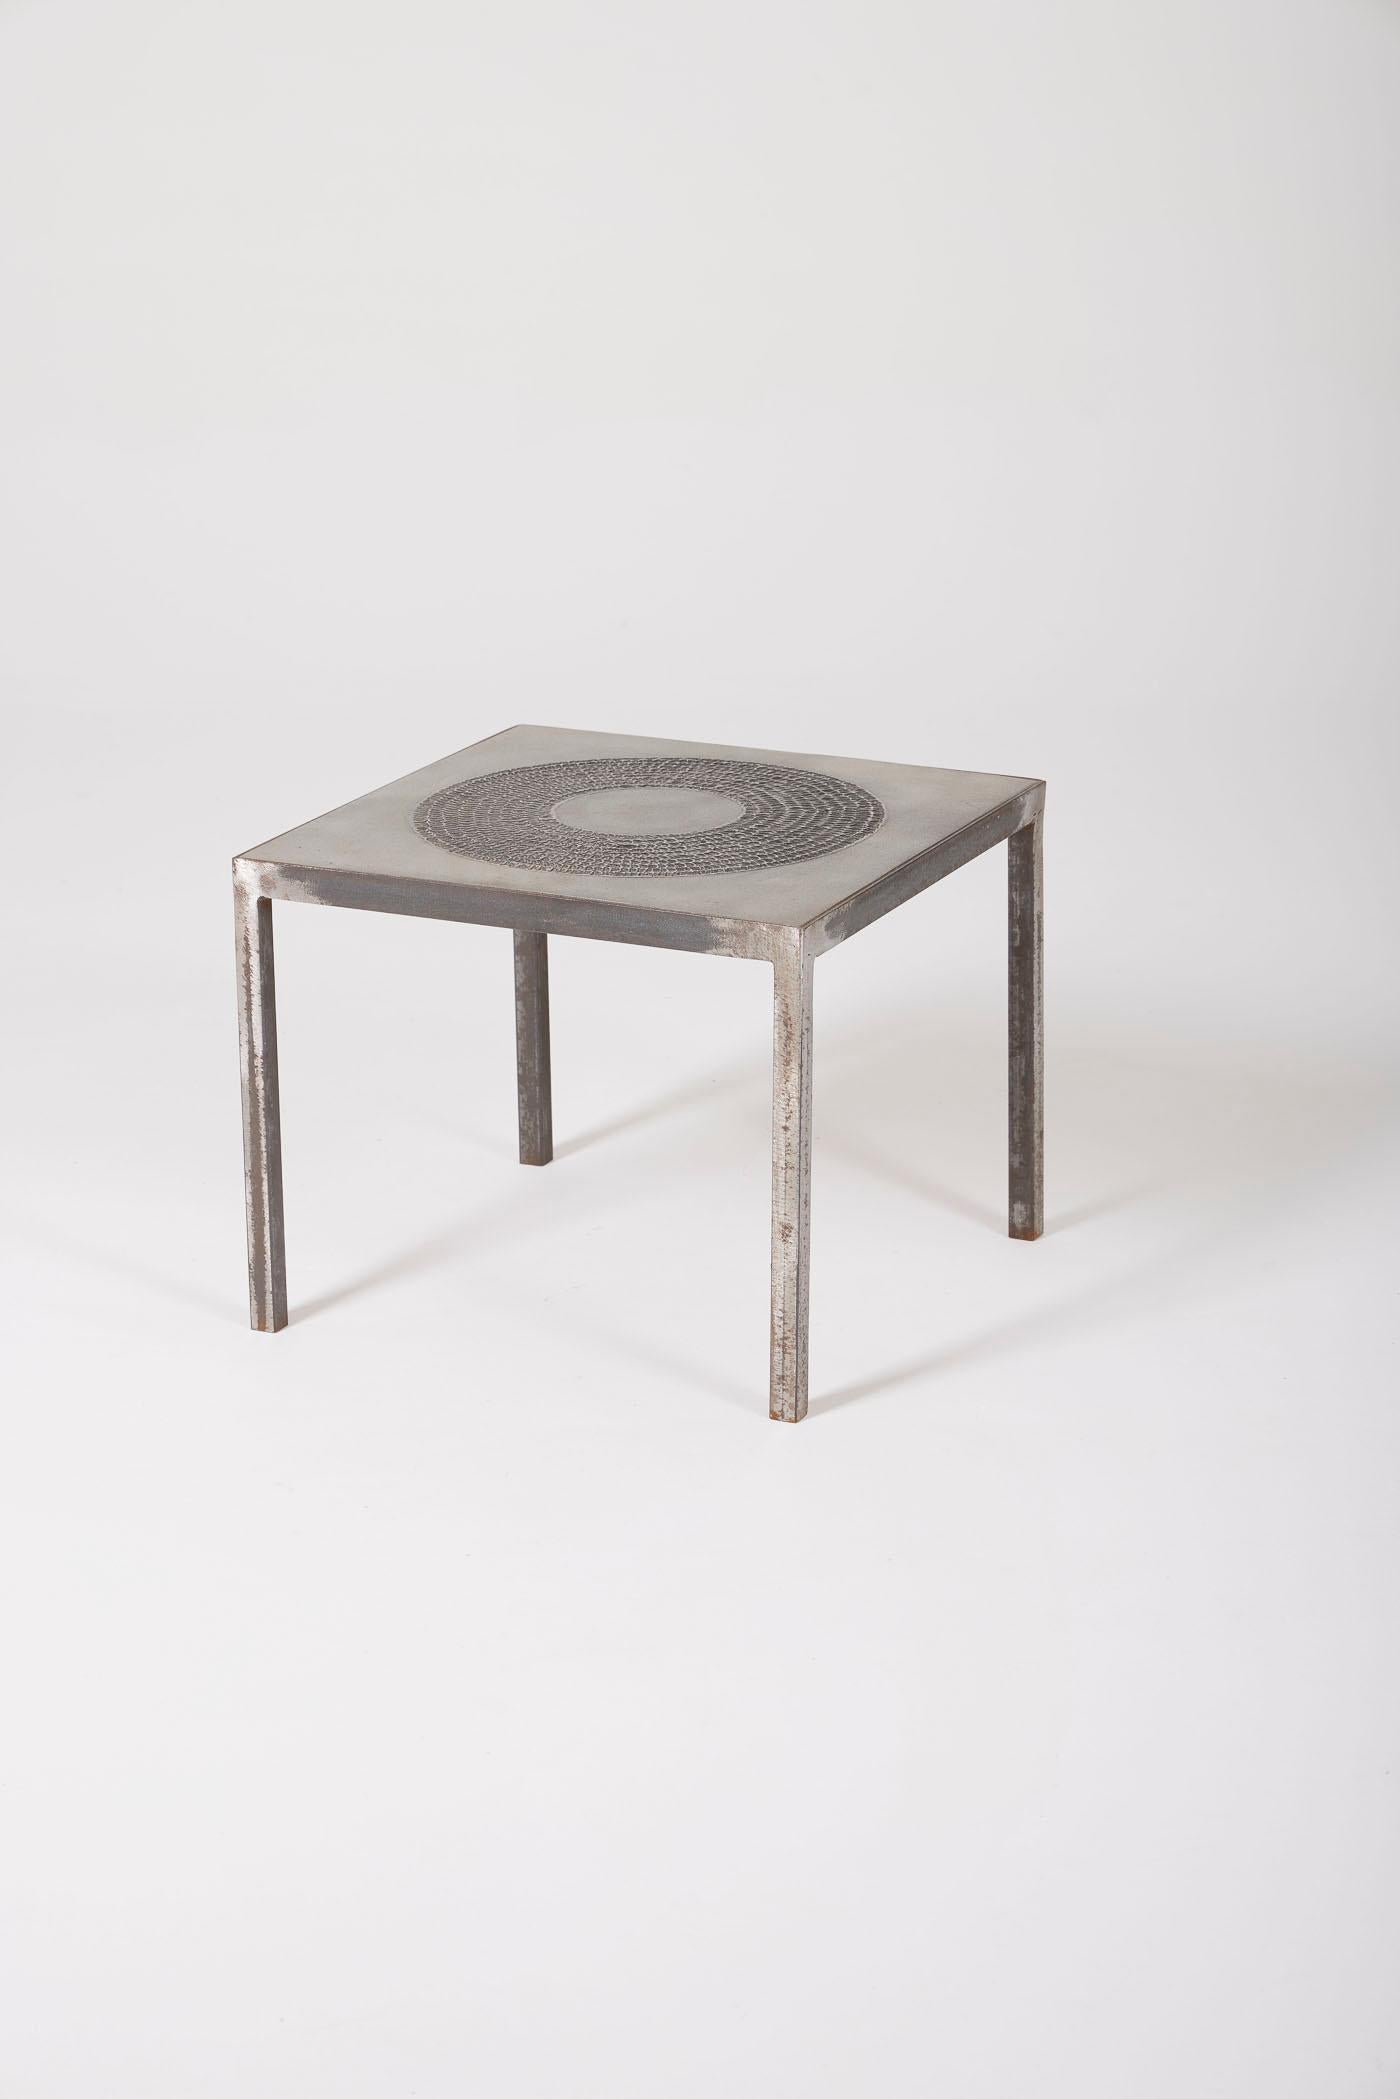 Paire de tables d'appoint brutalistes du designer Marc D'Haenens, années 1970. Structure en métal et plateaux en étain. Très bon état.
DV144